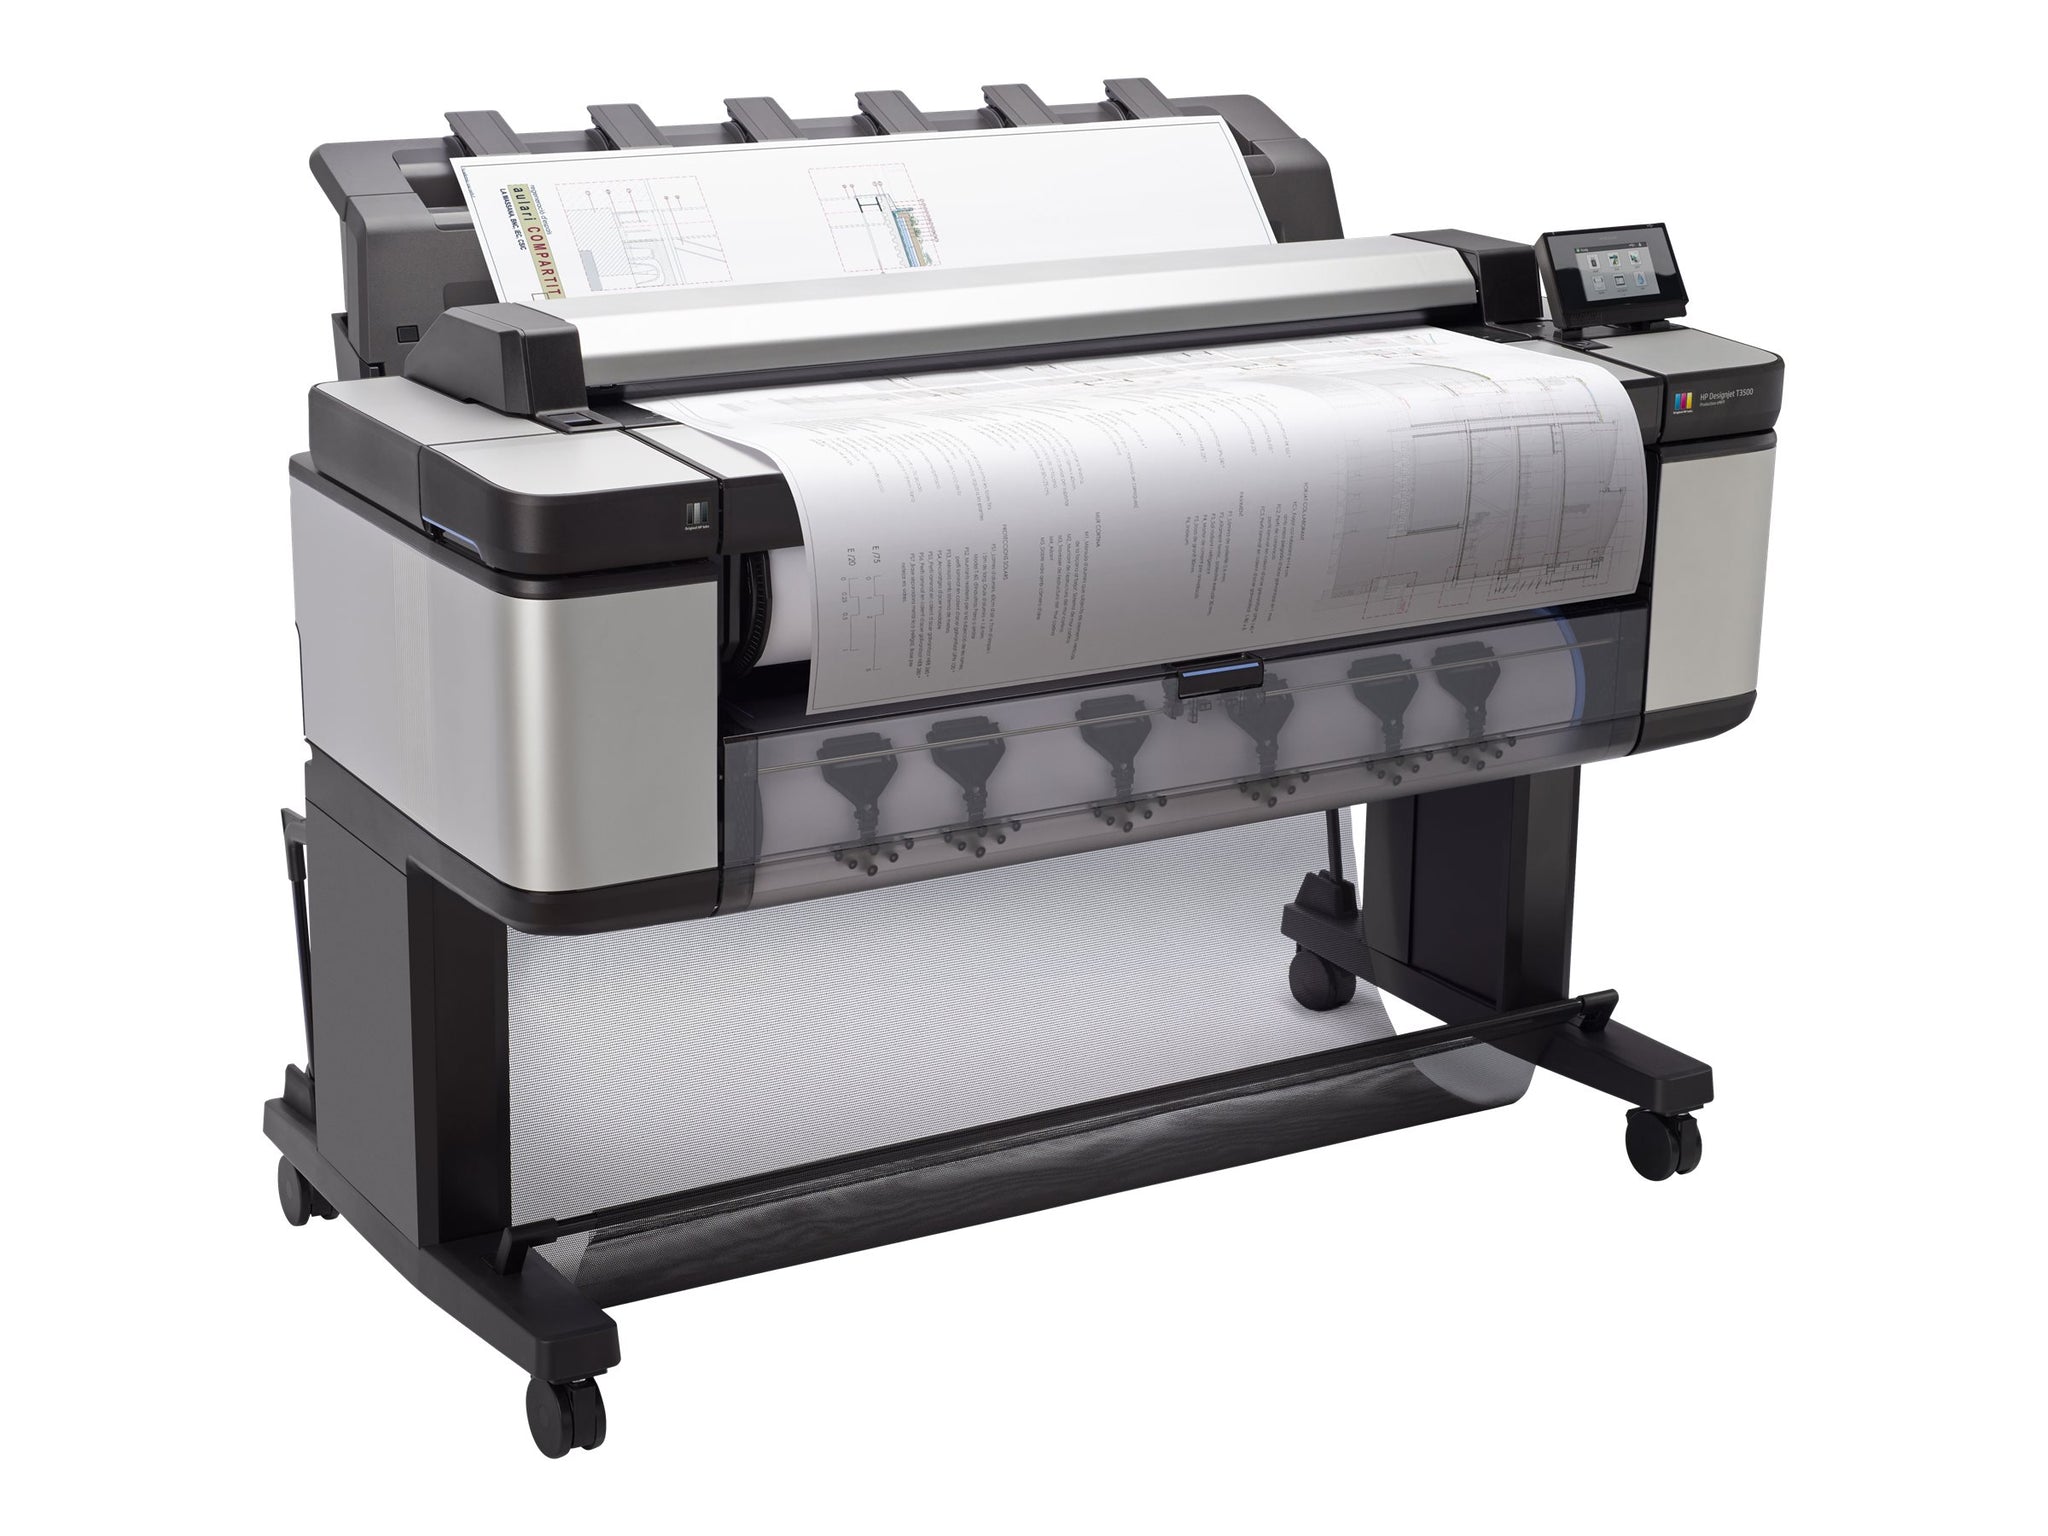 HP DesignJet T3500 Production eMFP - multifunction printer - color Refurbished